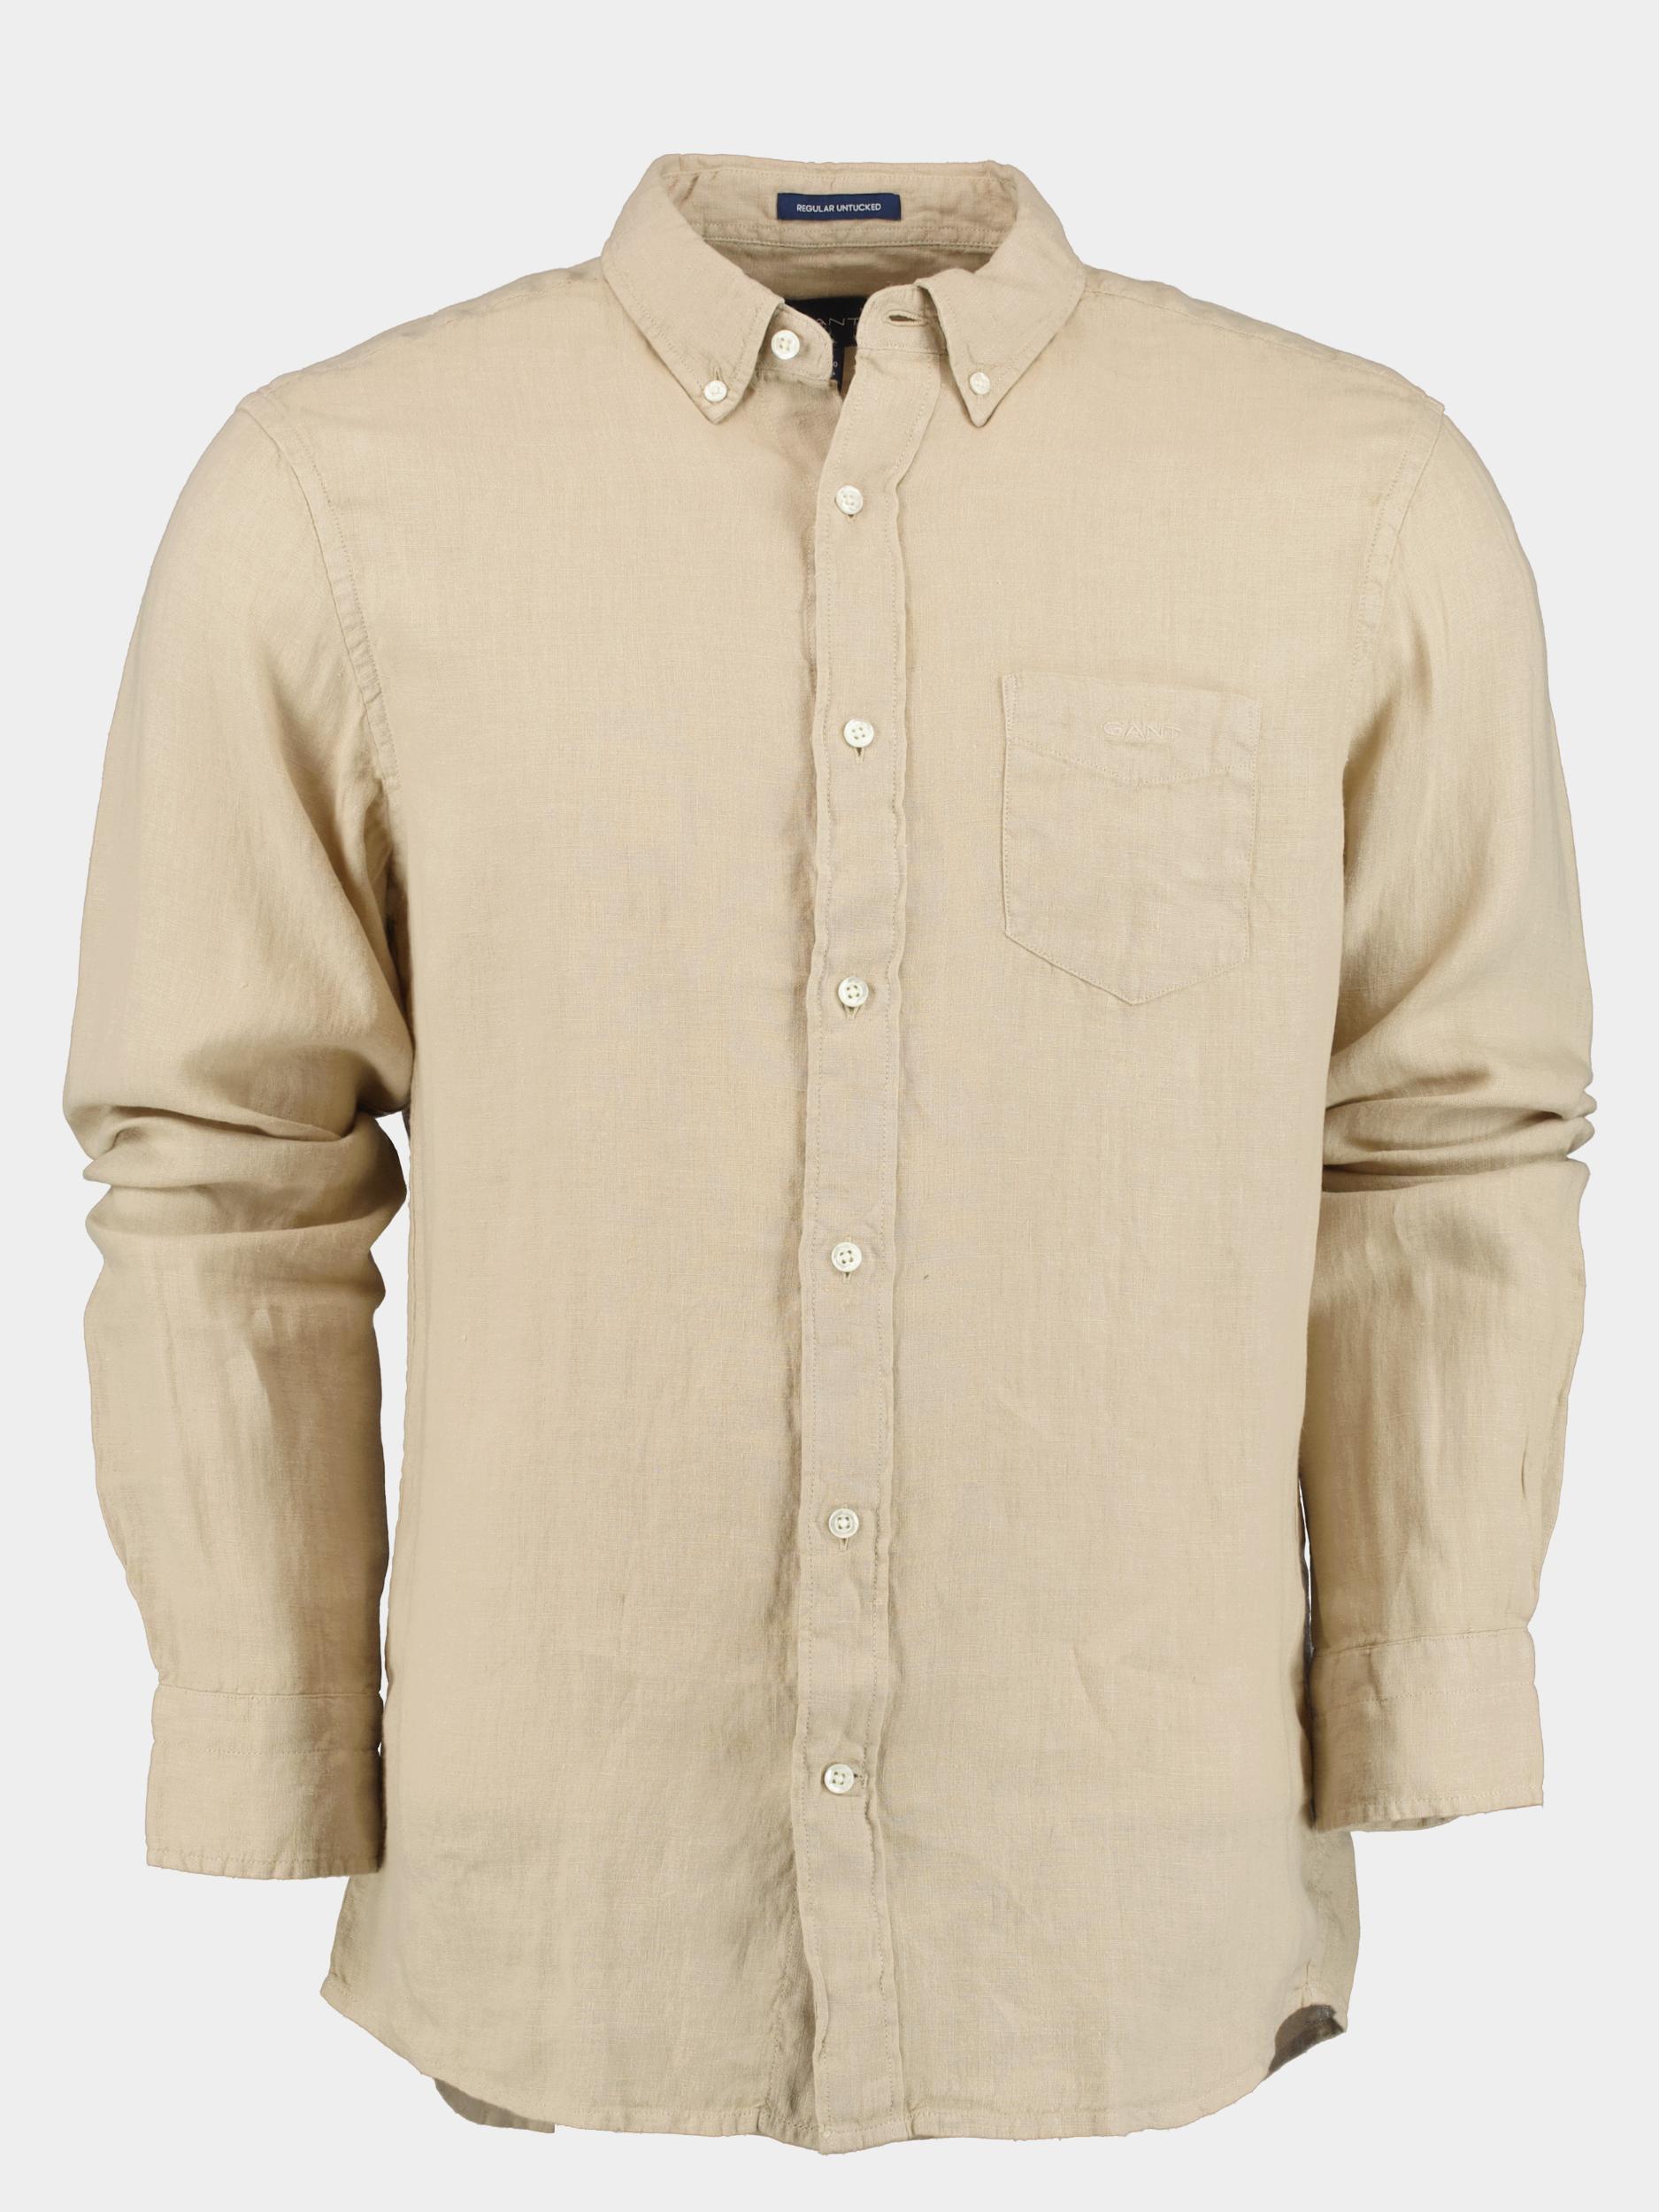 Gant Casual hemd lange mouw Beige Reg UT GMNT Dyed Linen Shirt 3230102/270